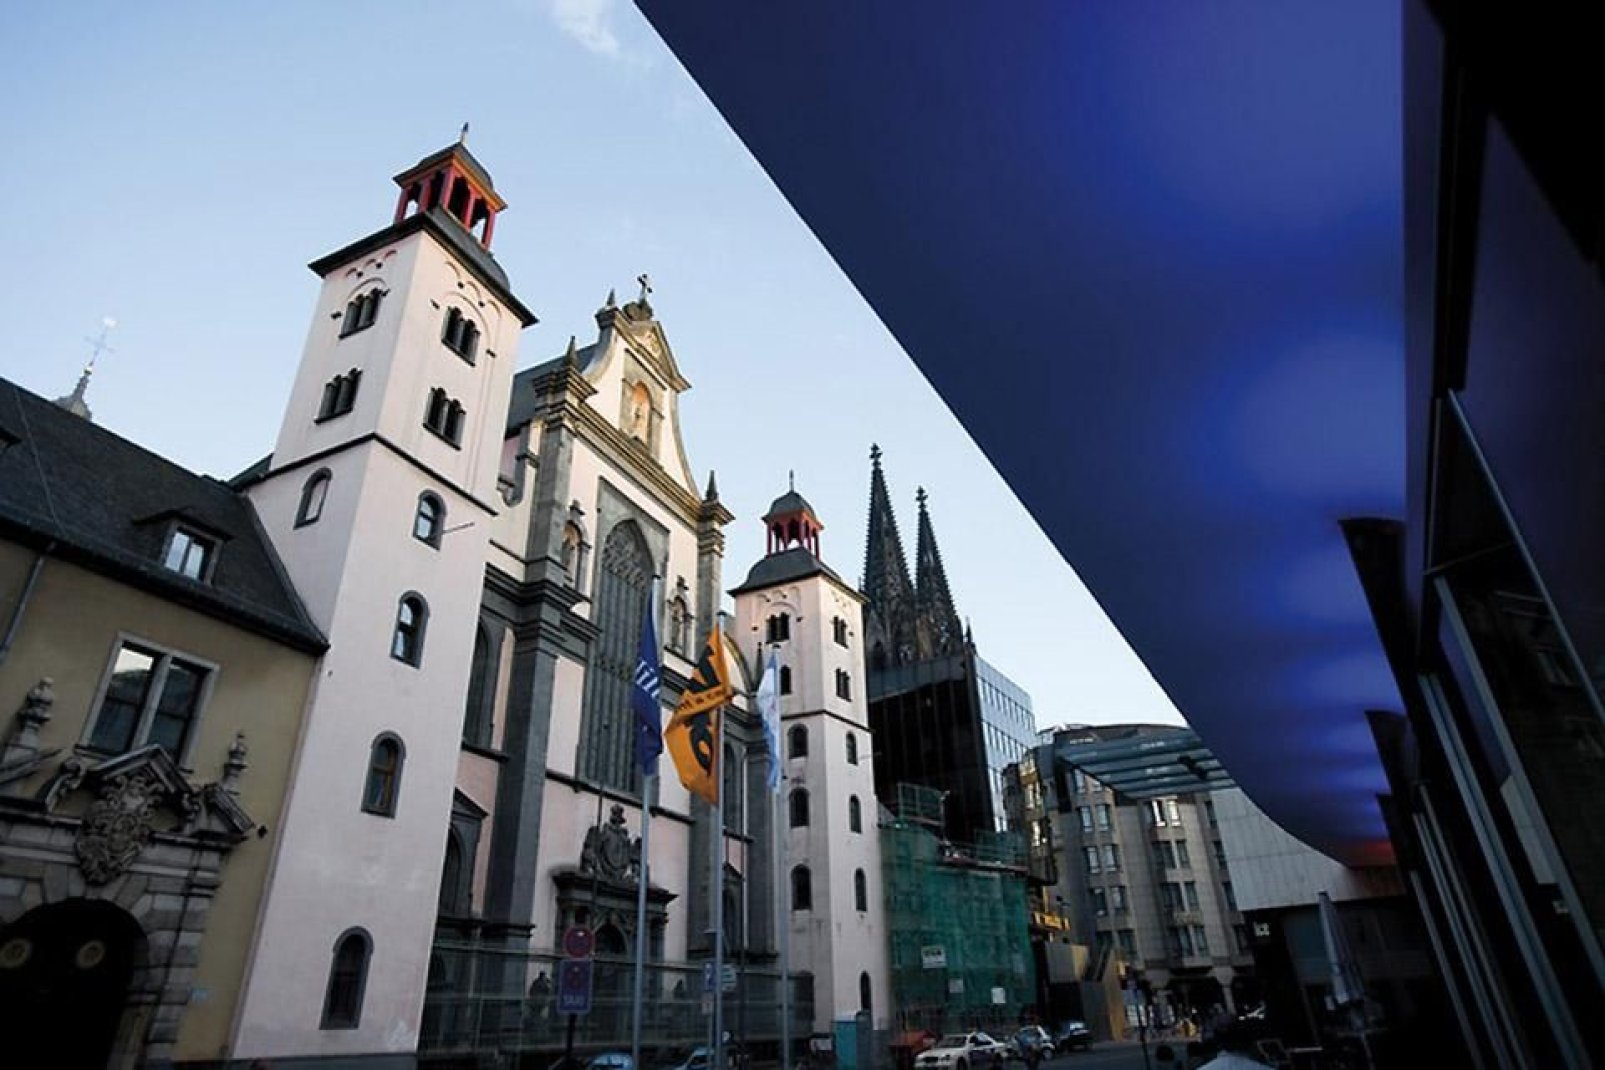 Viste le dimensioni, la cattedrale di Colonia è visibile da numerosi angoli della città.